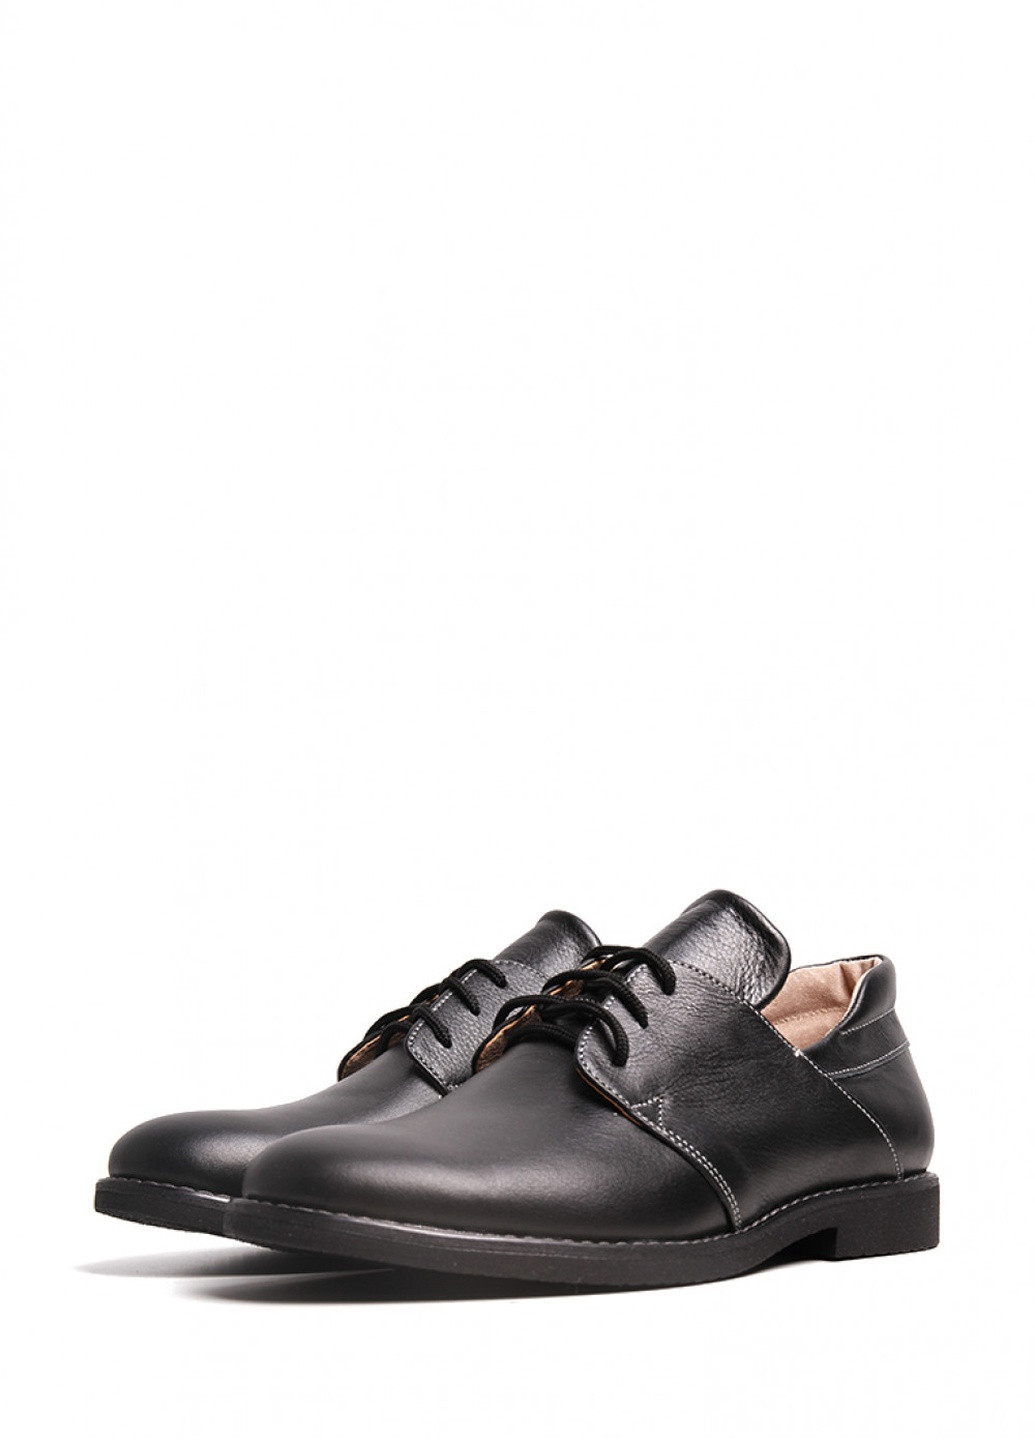 Черные классические кожаные туфли Villomi на низком каблуке